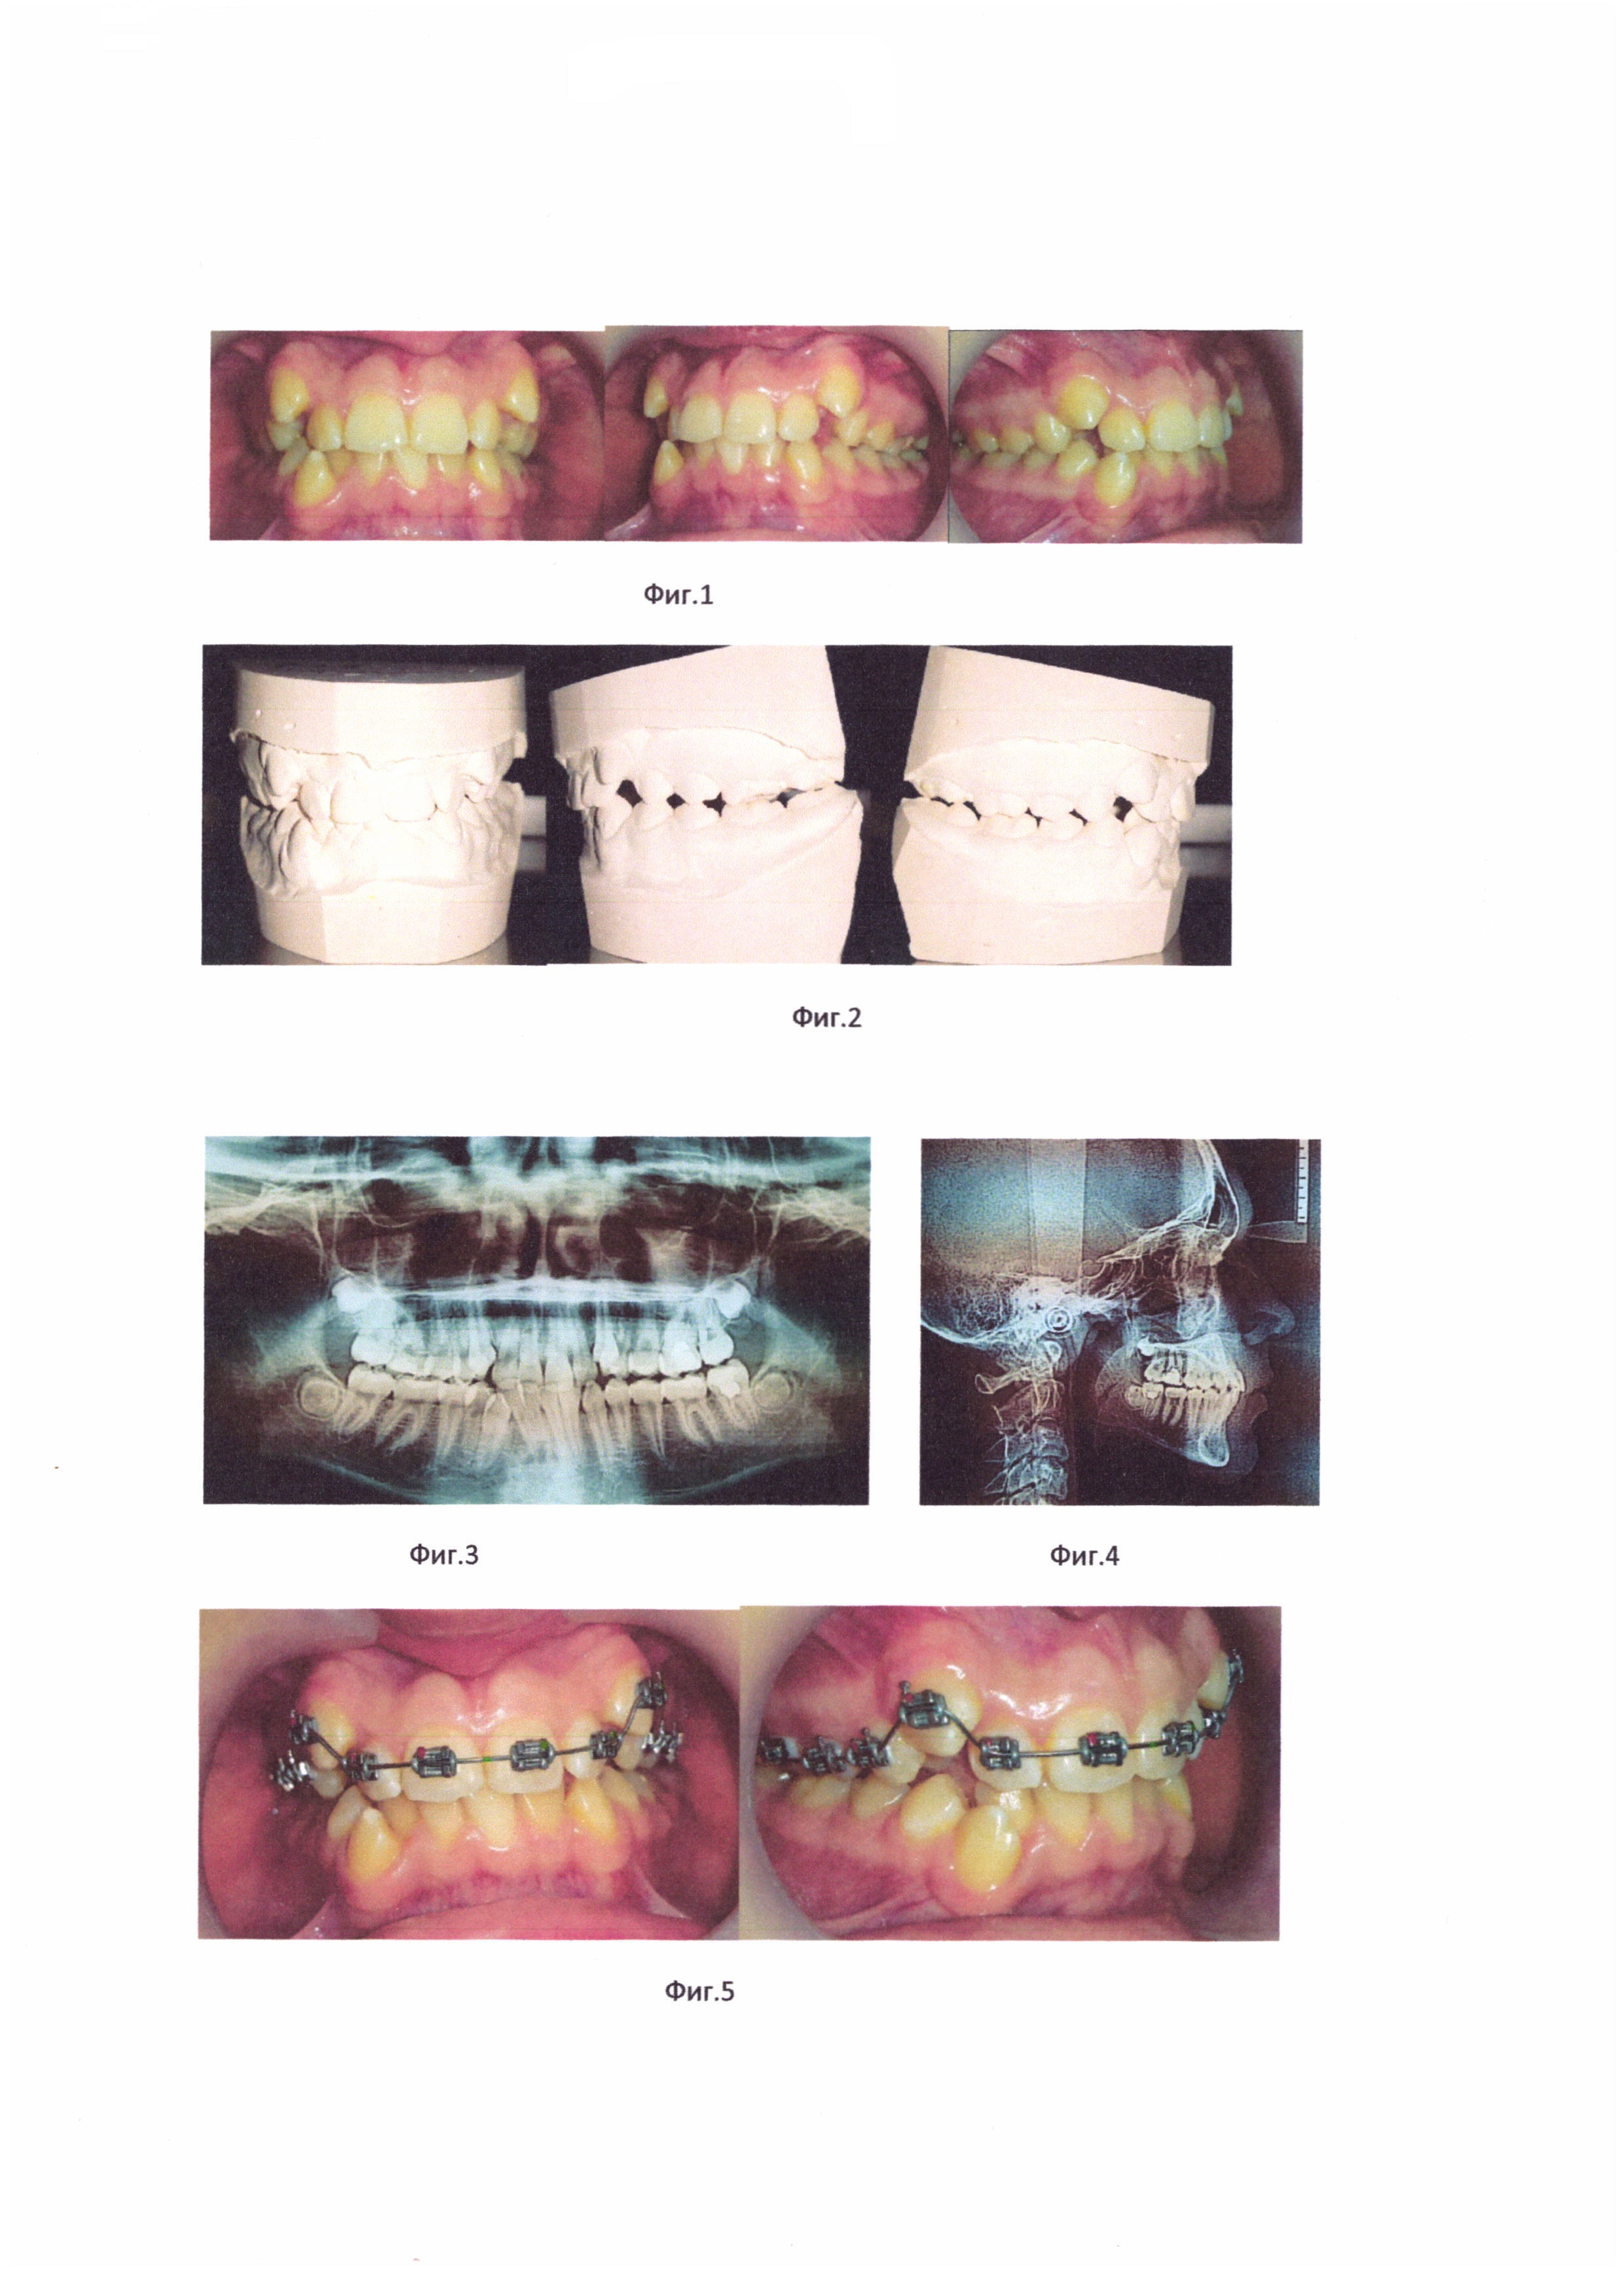 Способ ортодонтического лечения зубочелюстно-лицевых аномалий при помощи брекет-системы